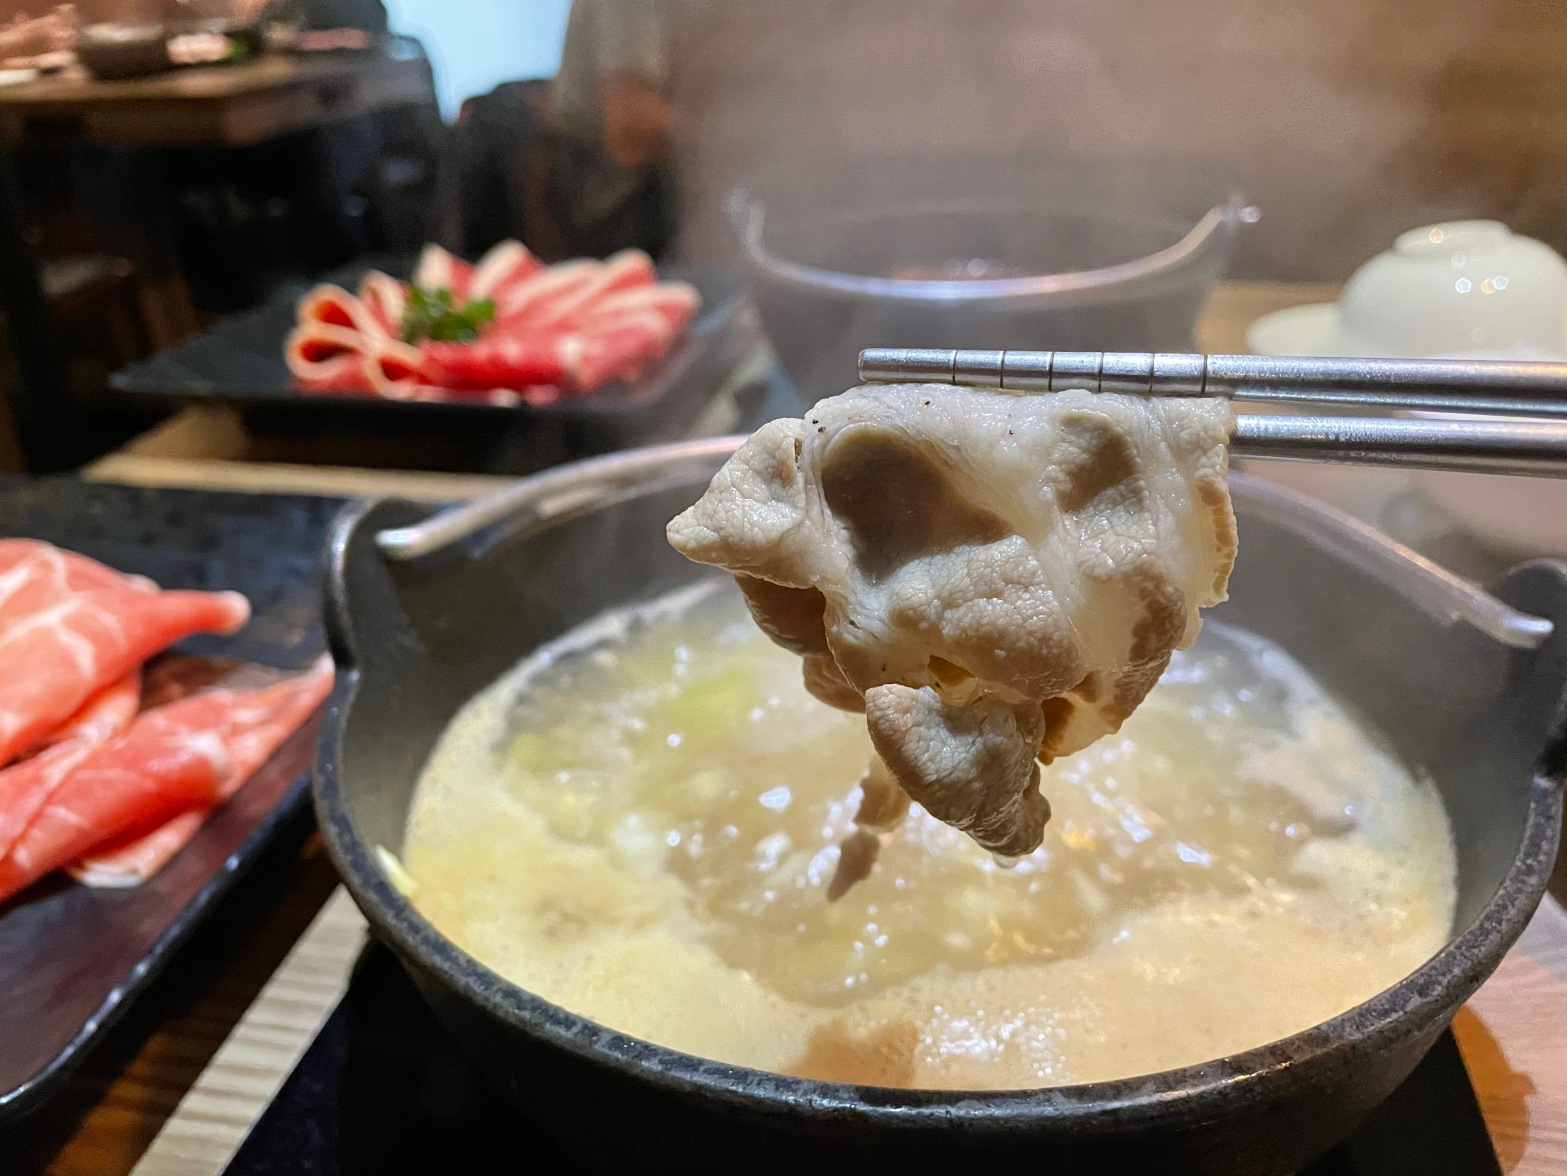 鍋藏火鍋店提供石頭火鍋等多種湯底選擇，肉品品質優良美味。